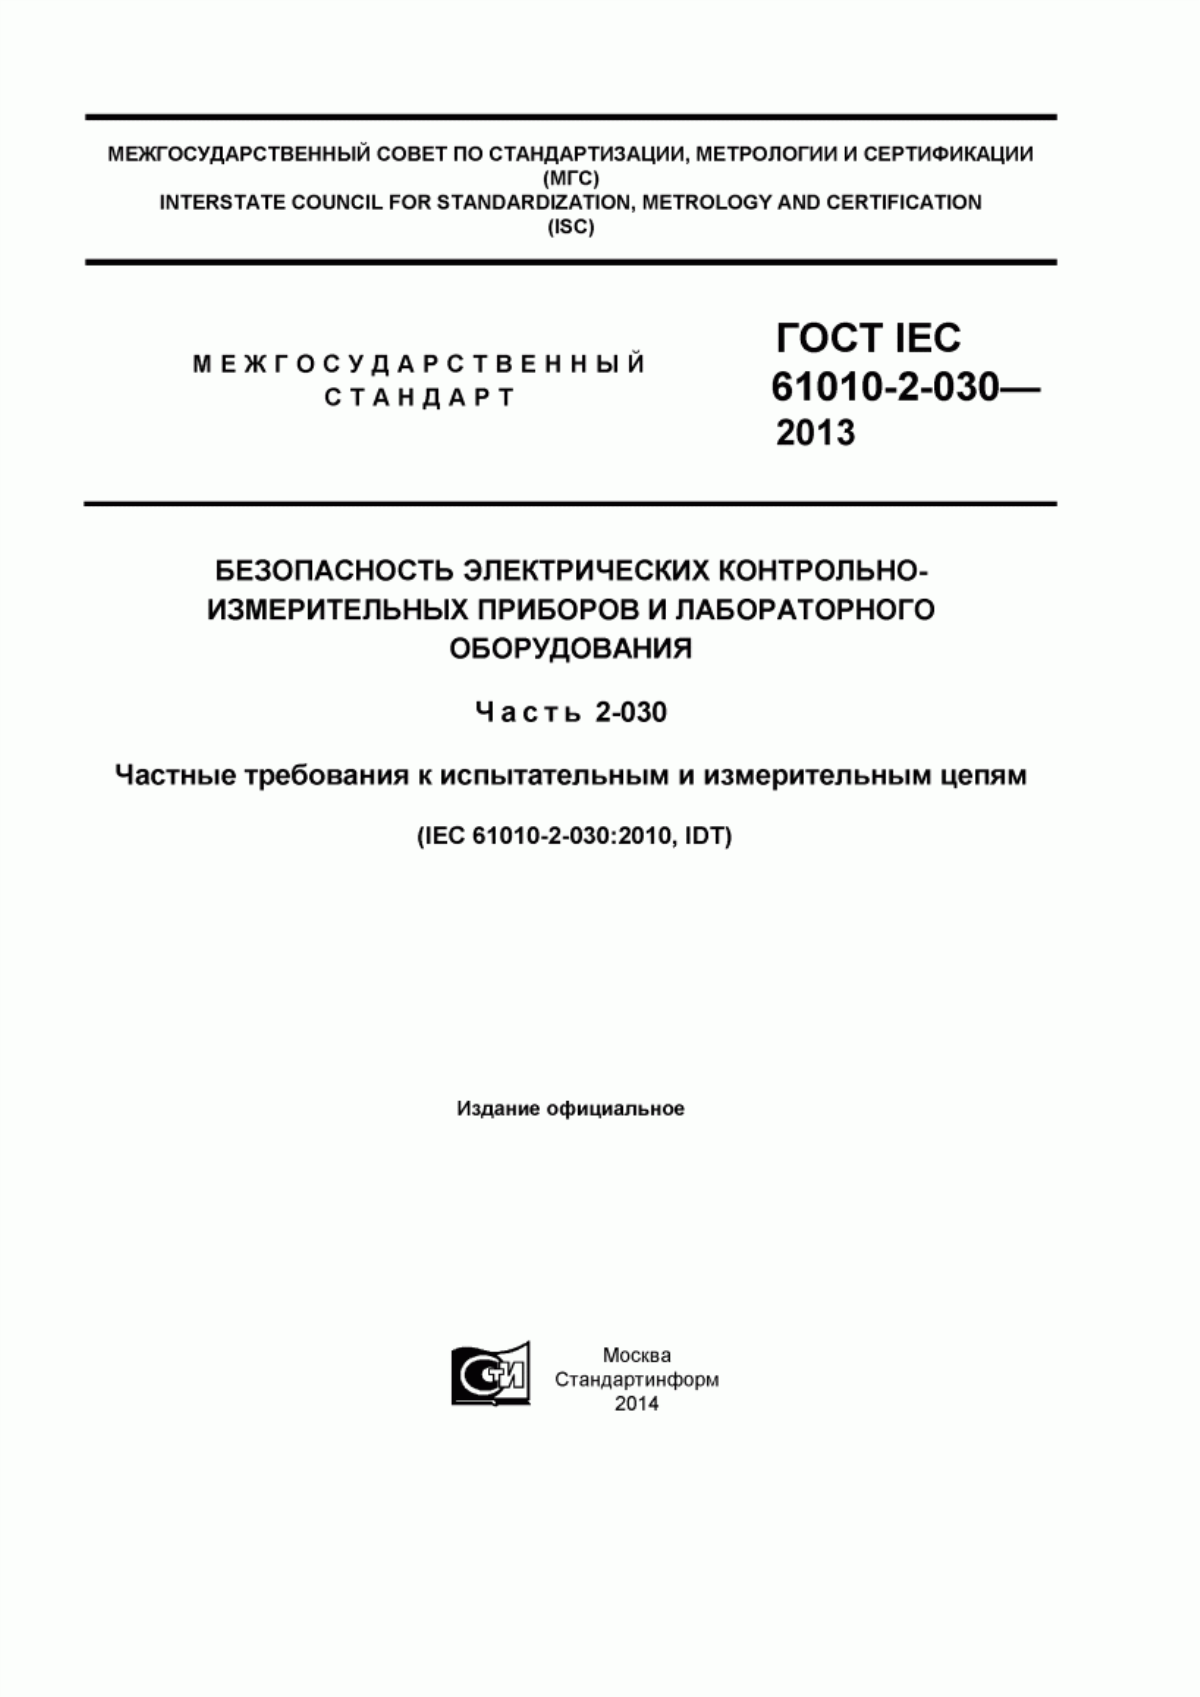 ГОСТ IEC 61010-2-030-2013 Безопасность электрических контрольно-измерительных приборов и лабораторного оборудования. Часть 2-030. Частные требования к испытательным и измерительным цепям